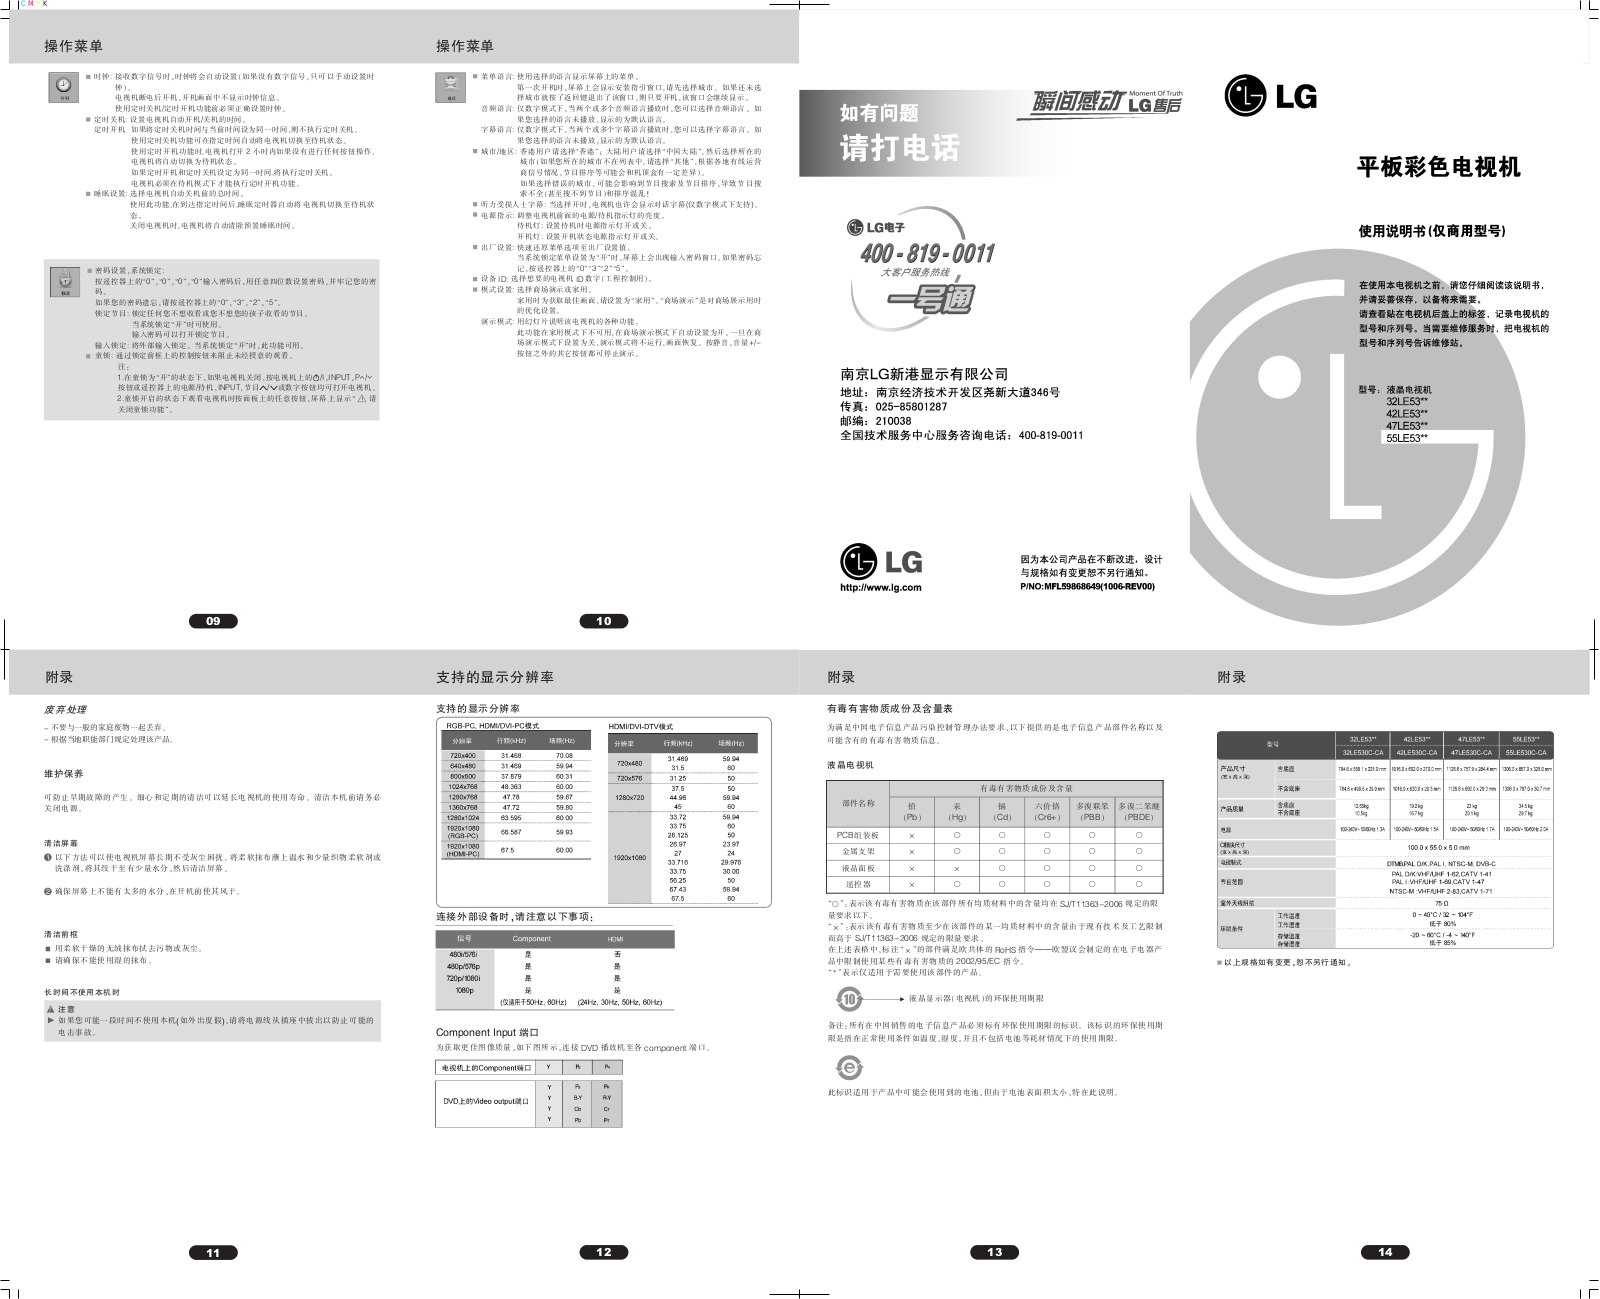 LG 55LE530C, 32LE530C, 42LE530C, 47LE530C Product Manual